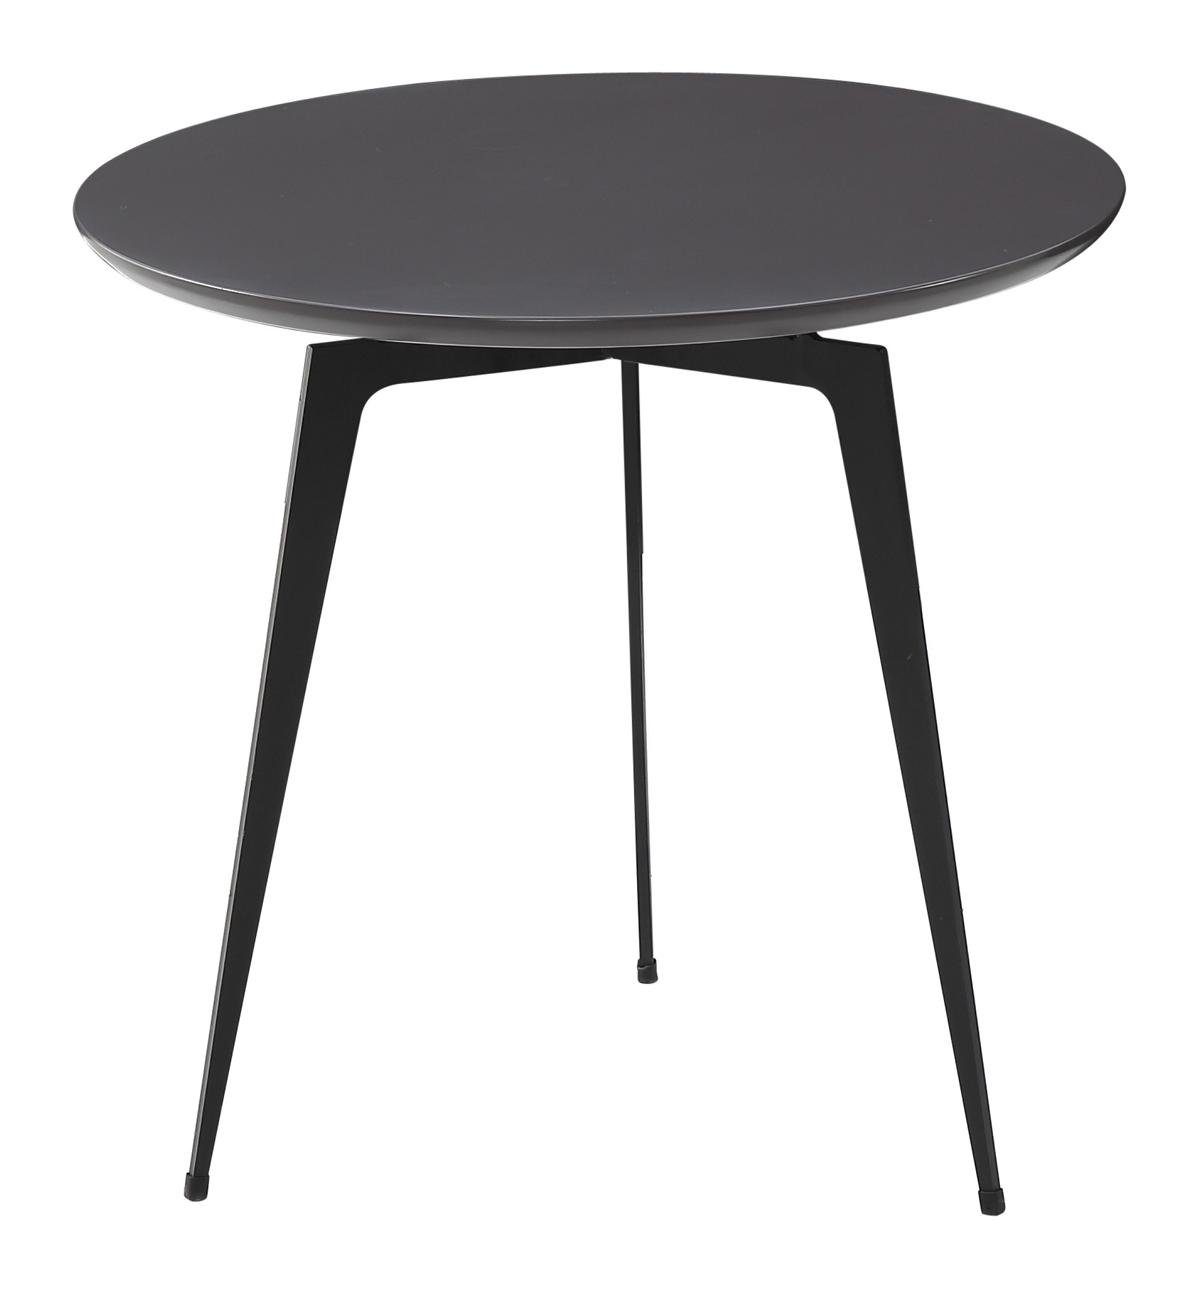 Jafra Couchtisch, Beistelltisch Runder Tisch Runde Tische Couchtisch Sofa Design Tisch Wohnzimmer